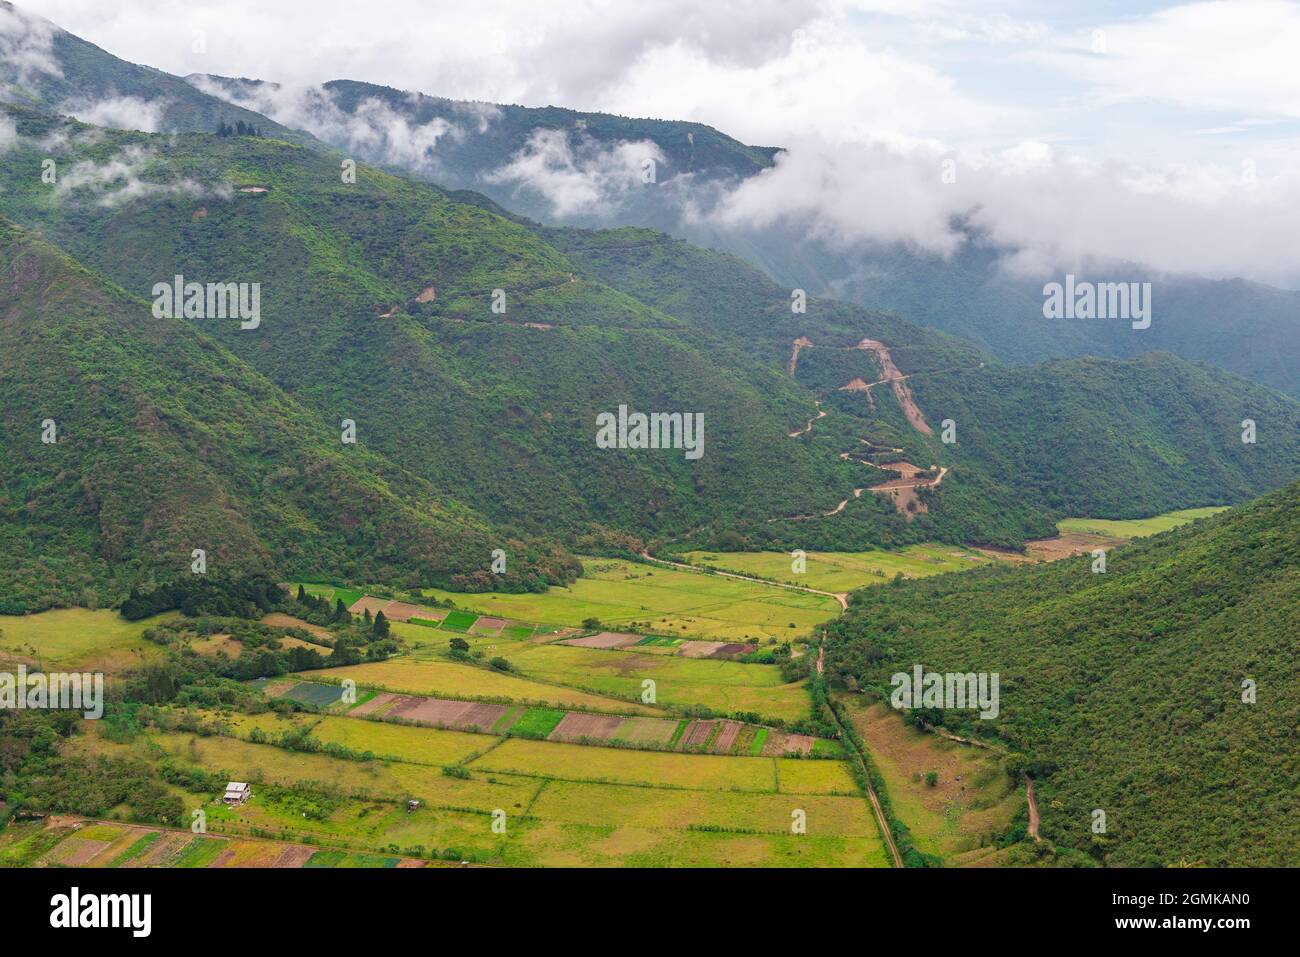 Agricoltura campi di comunità indigene in una valle del cratere vulcanico Pululahua, Quito, Ecuador. Foto Stock